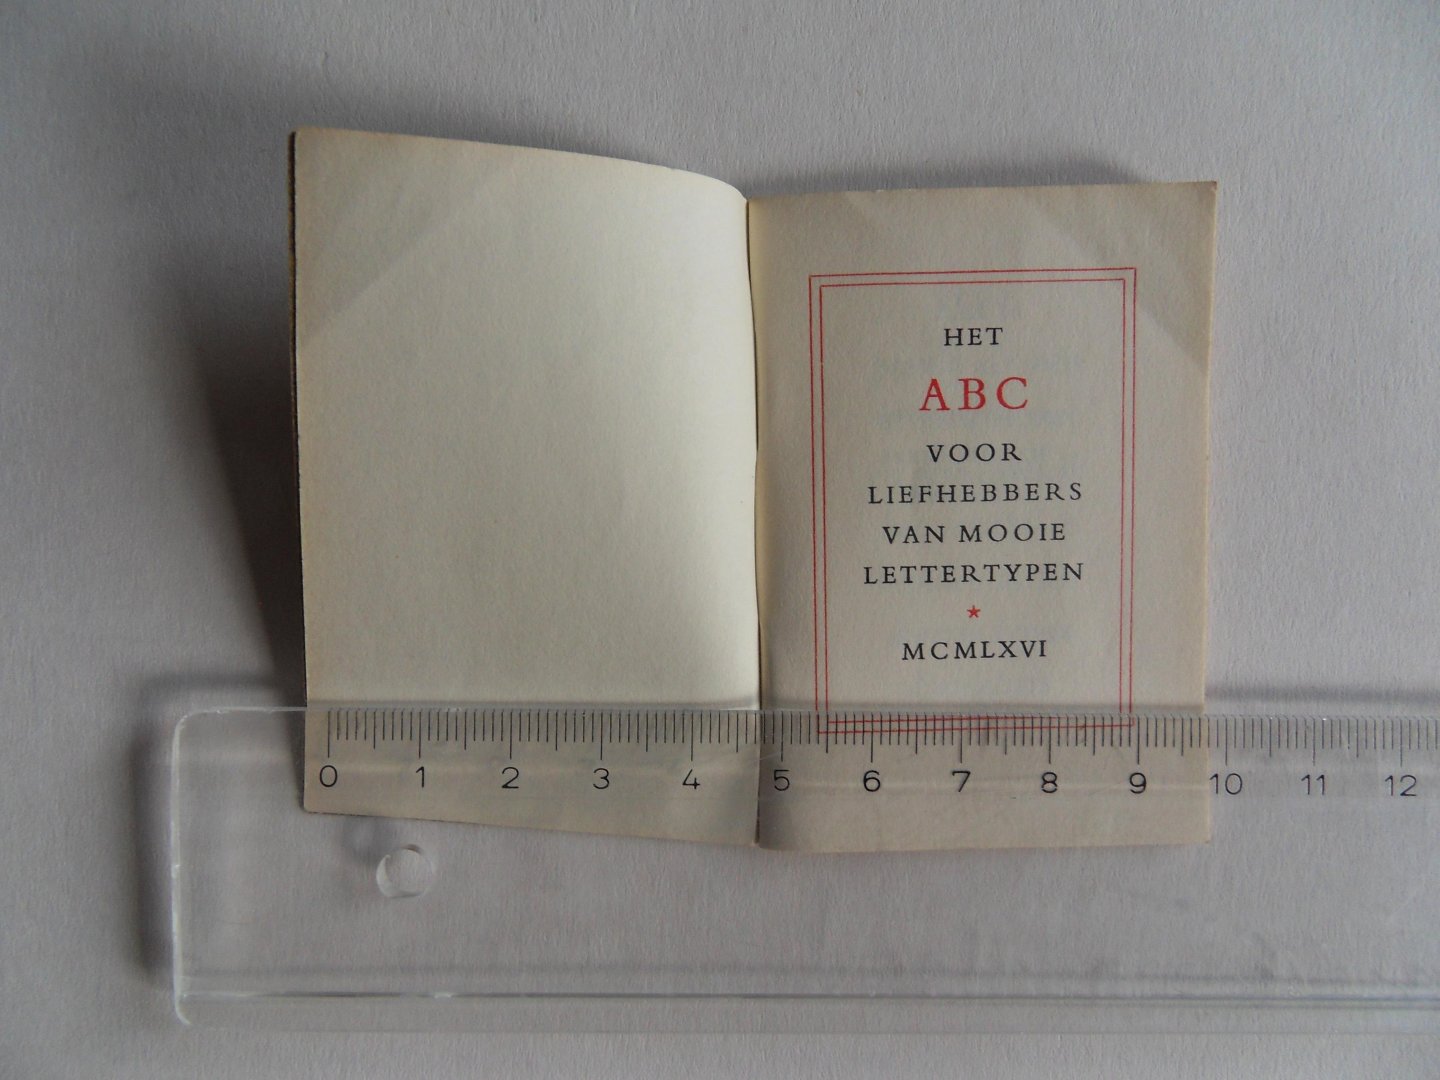 The Monotype Corporation Limited. - Het ABC voor liefhebbers van mooie Lettertypen. [ Beperkte oplage, echter aantal niet vermeld ].